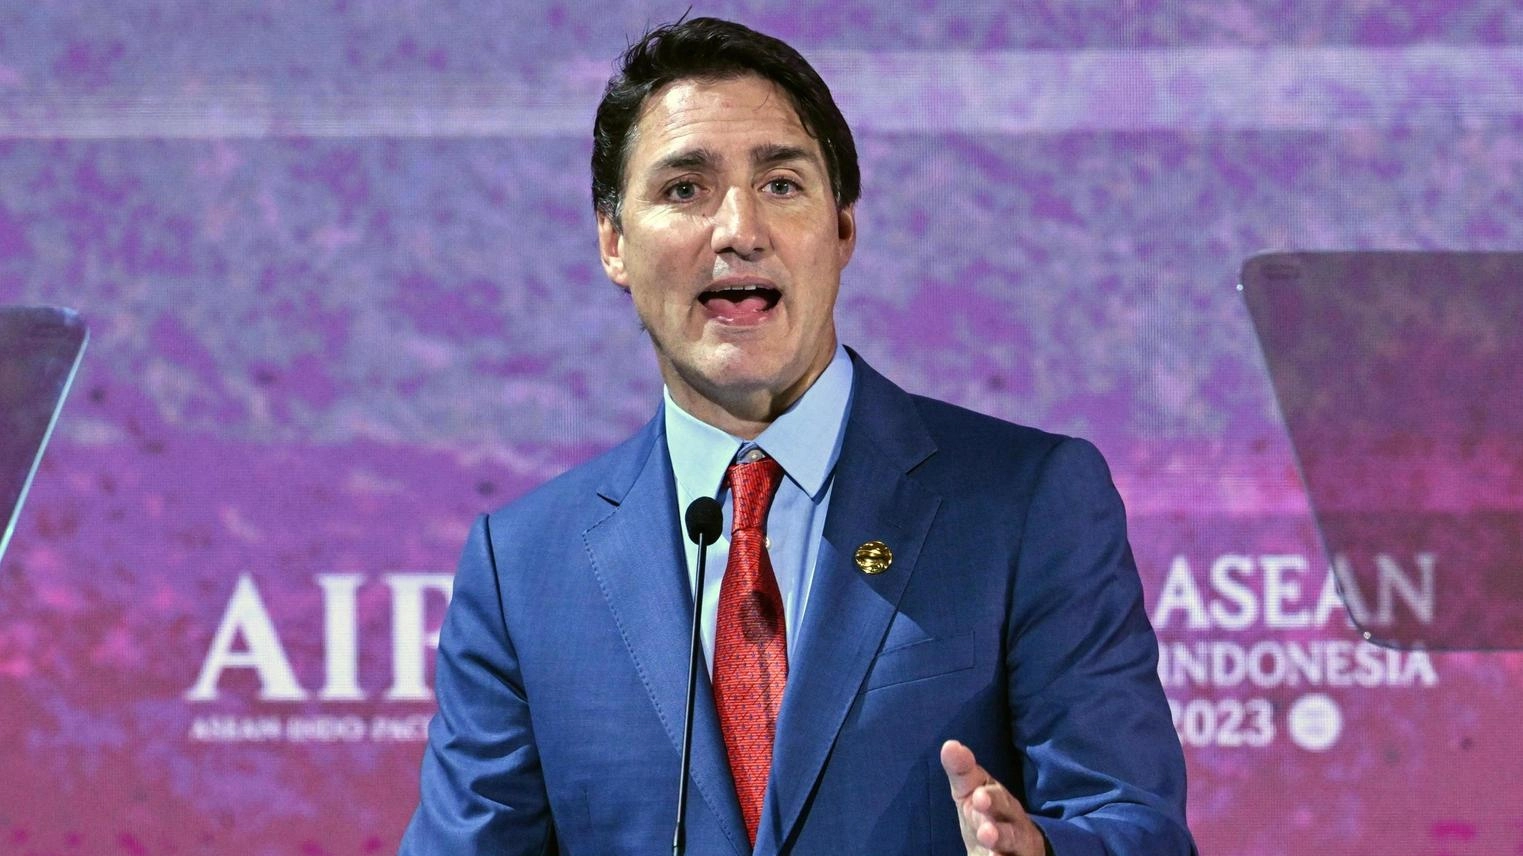 La tensione tra India e Canada esplode dopo l'accusa di Trudeau al premier Modi di essere il mandante dell'omicidio di un leader sikh. Modi risponde con un ultimatum al diplomatico canadese. Lo scontro preoccupa gli equilibri internazionali.